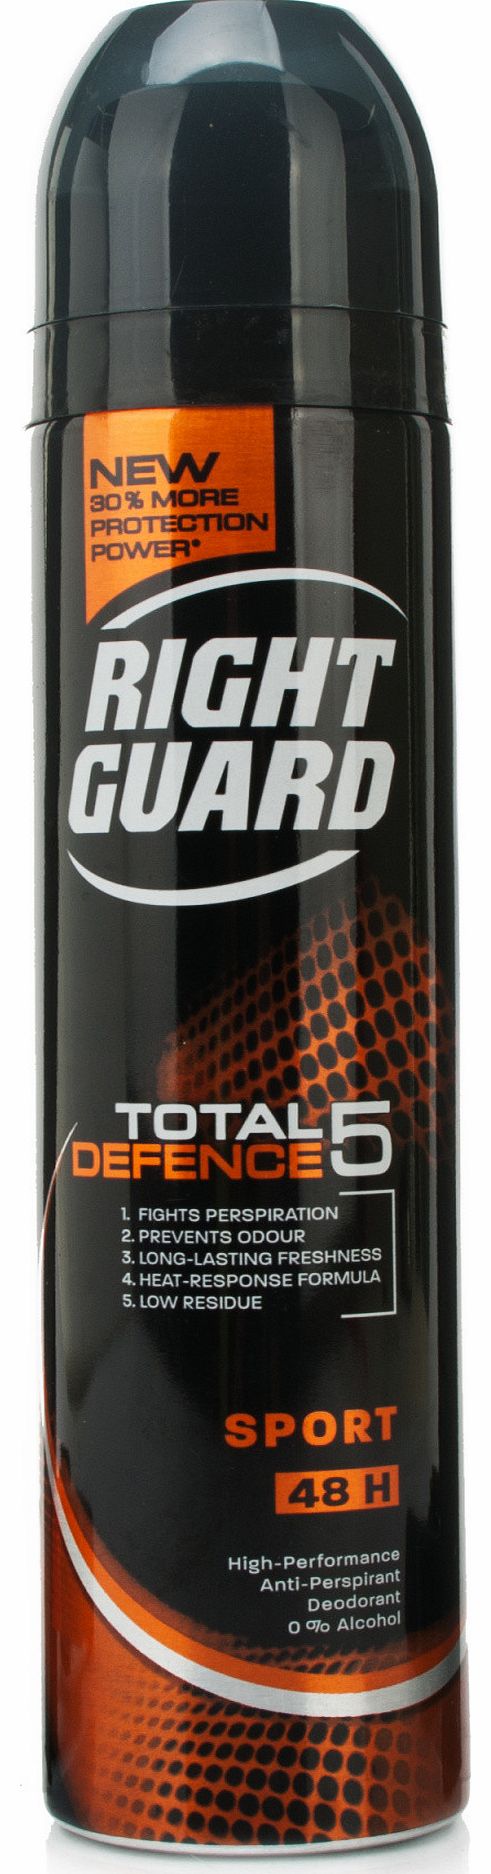 Total Defence 5 Sport